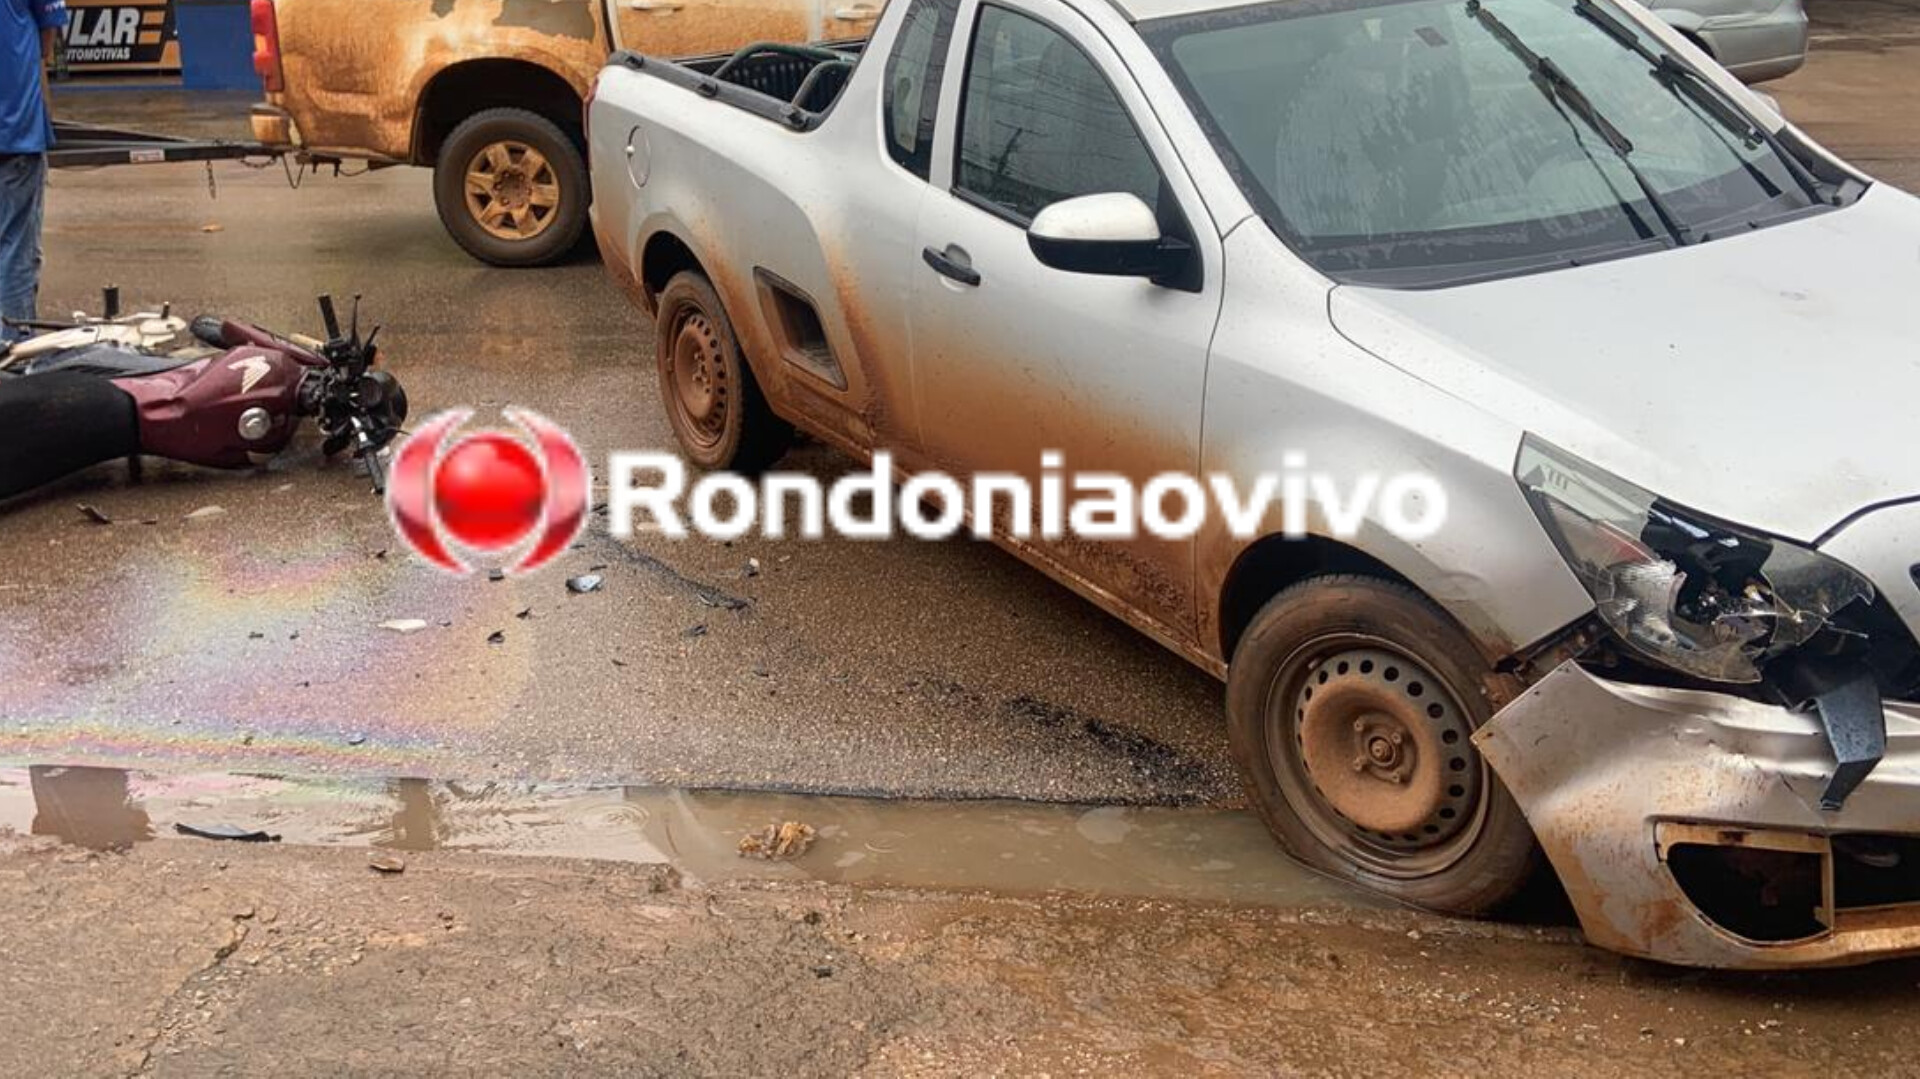 FRATURA: Motoboy quebra a perna após bater em carro na zona Sul de Porto Velho